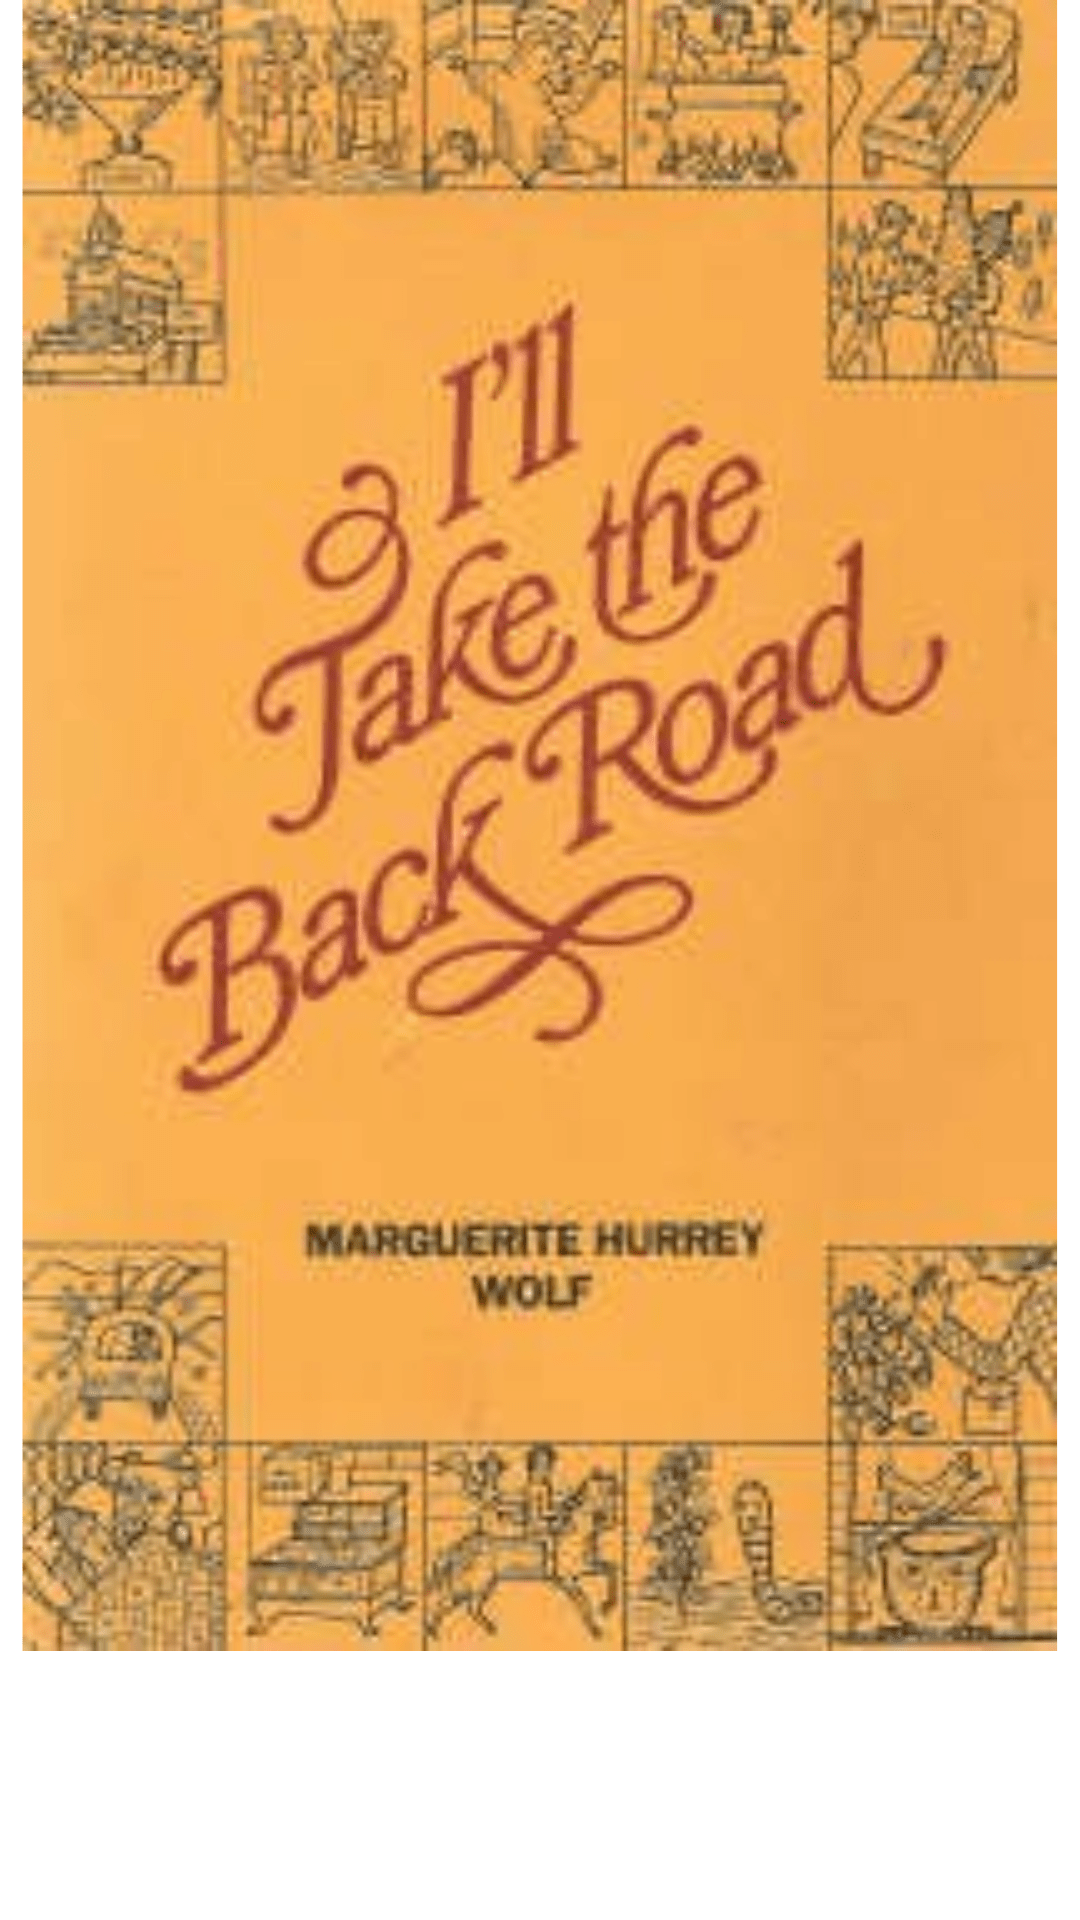 I'll Take the Back Road